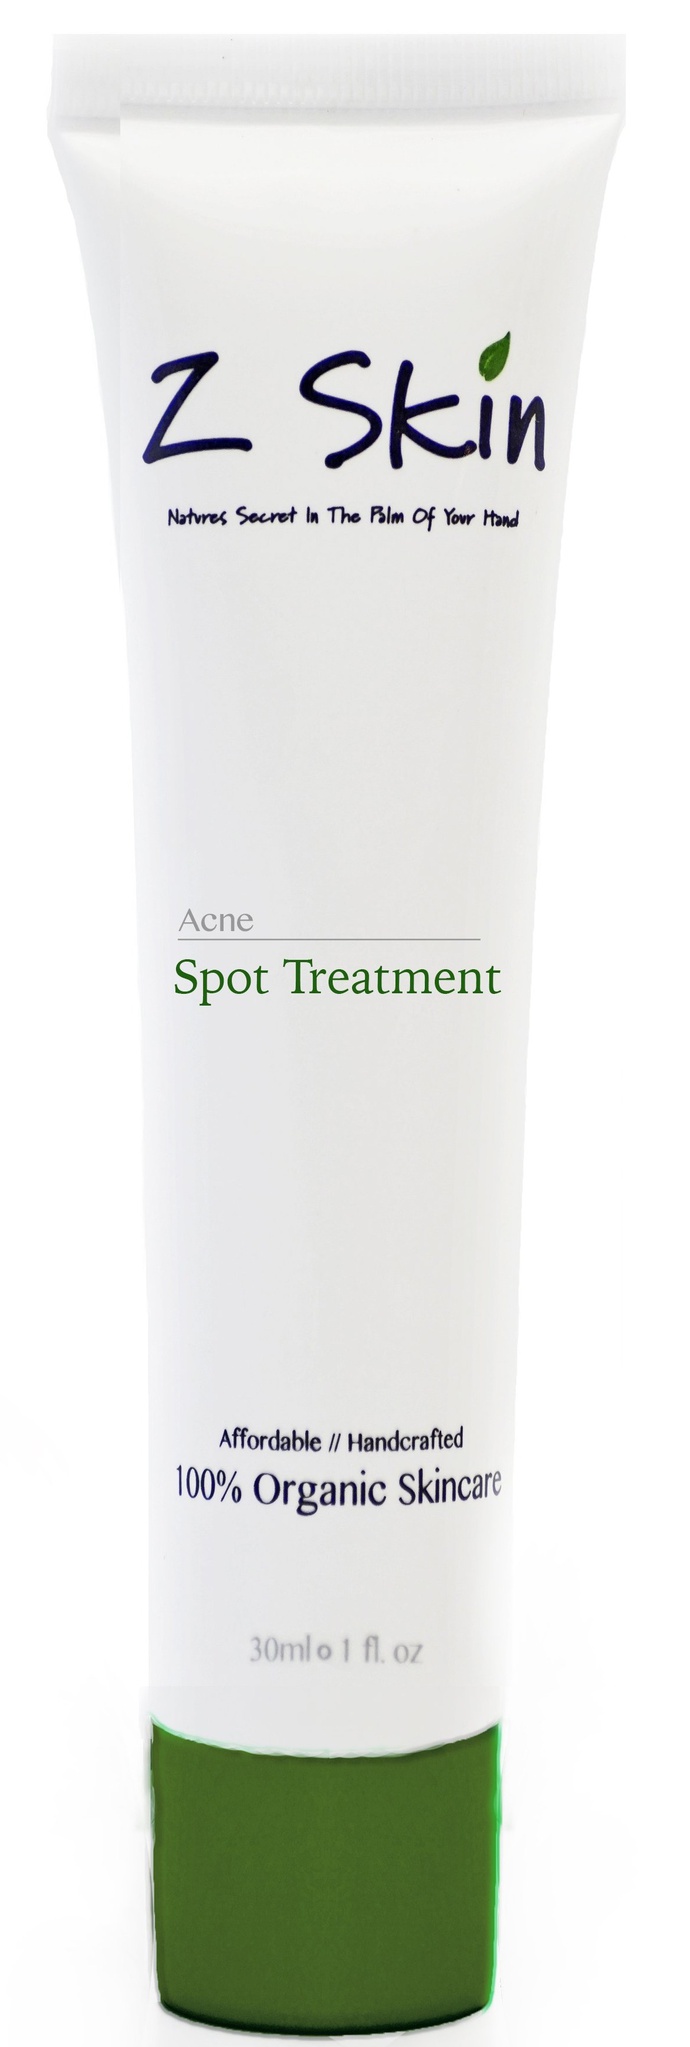 Z Skin Acne Spot Treatment